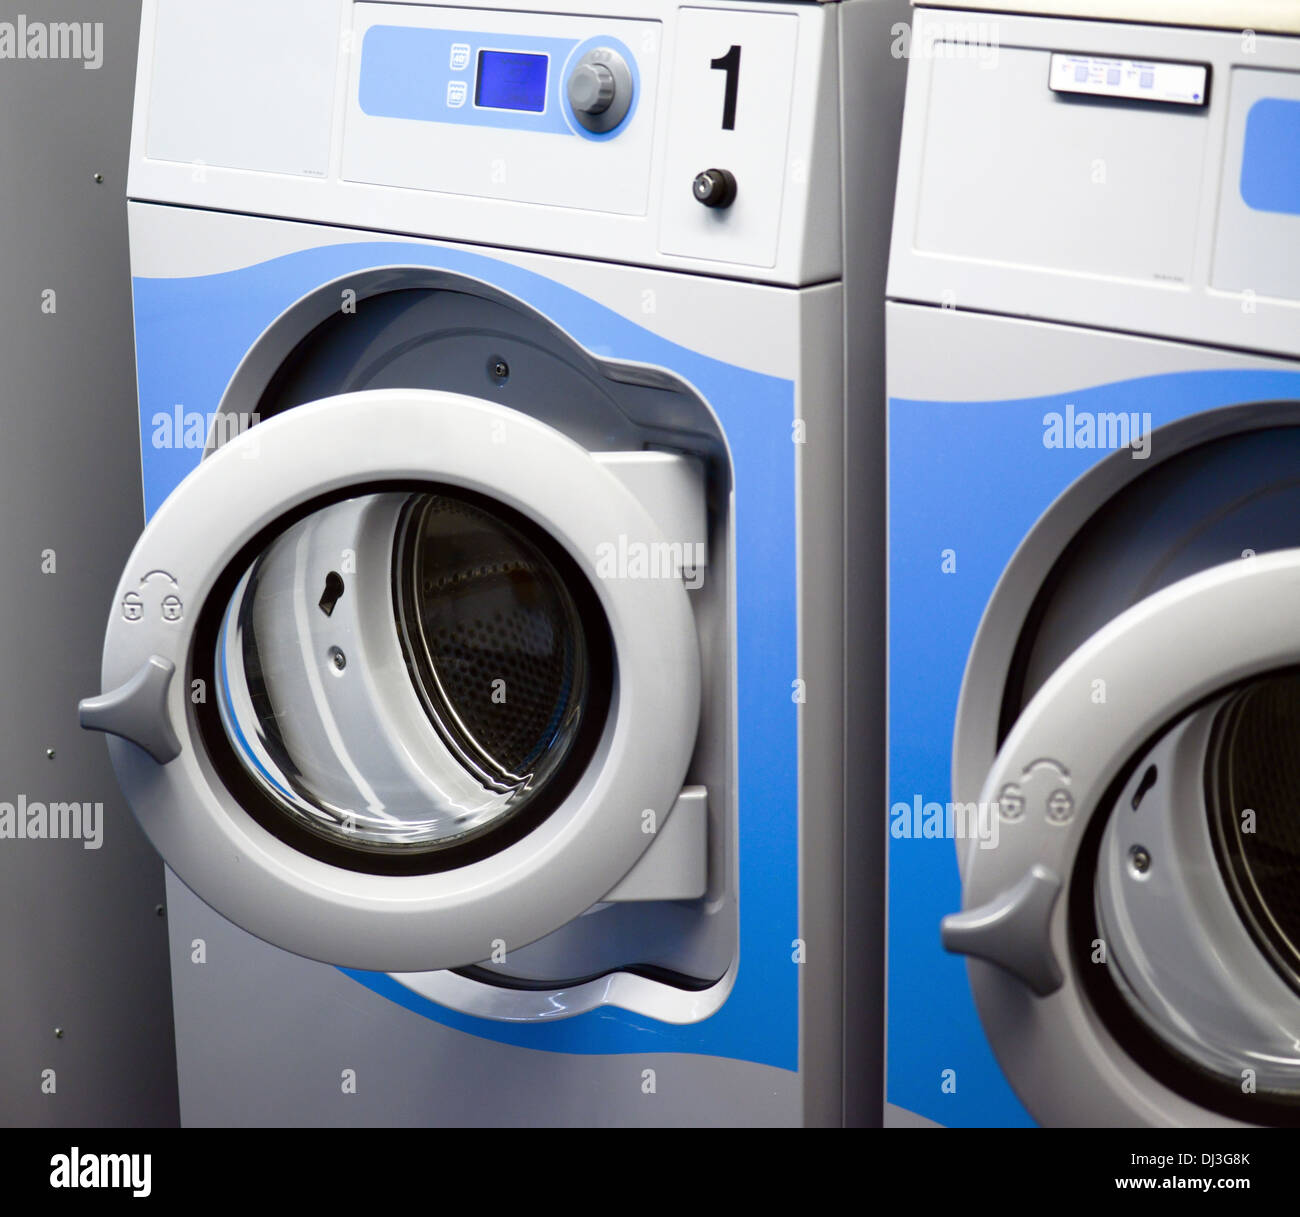 Washing machines room Stock Photo